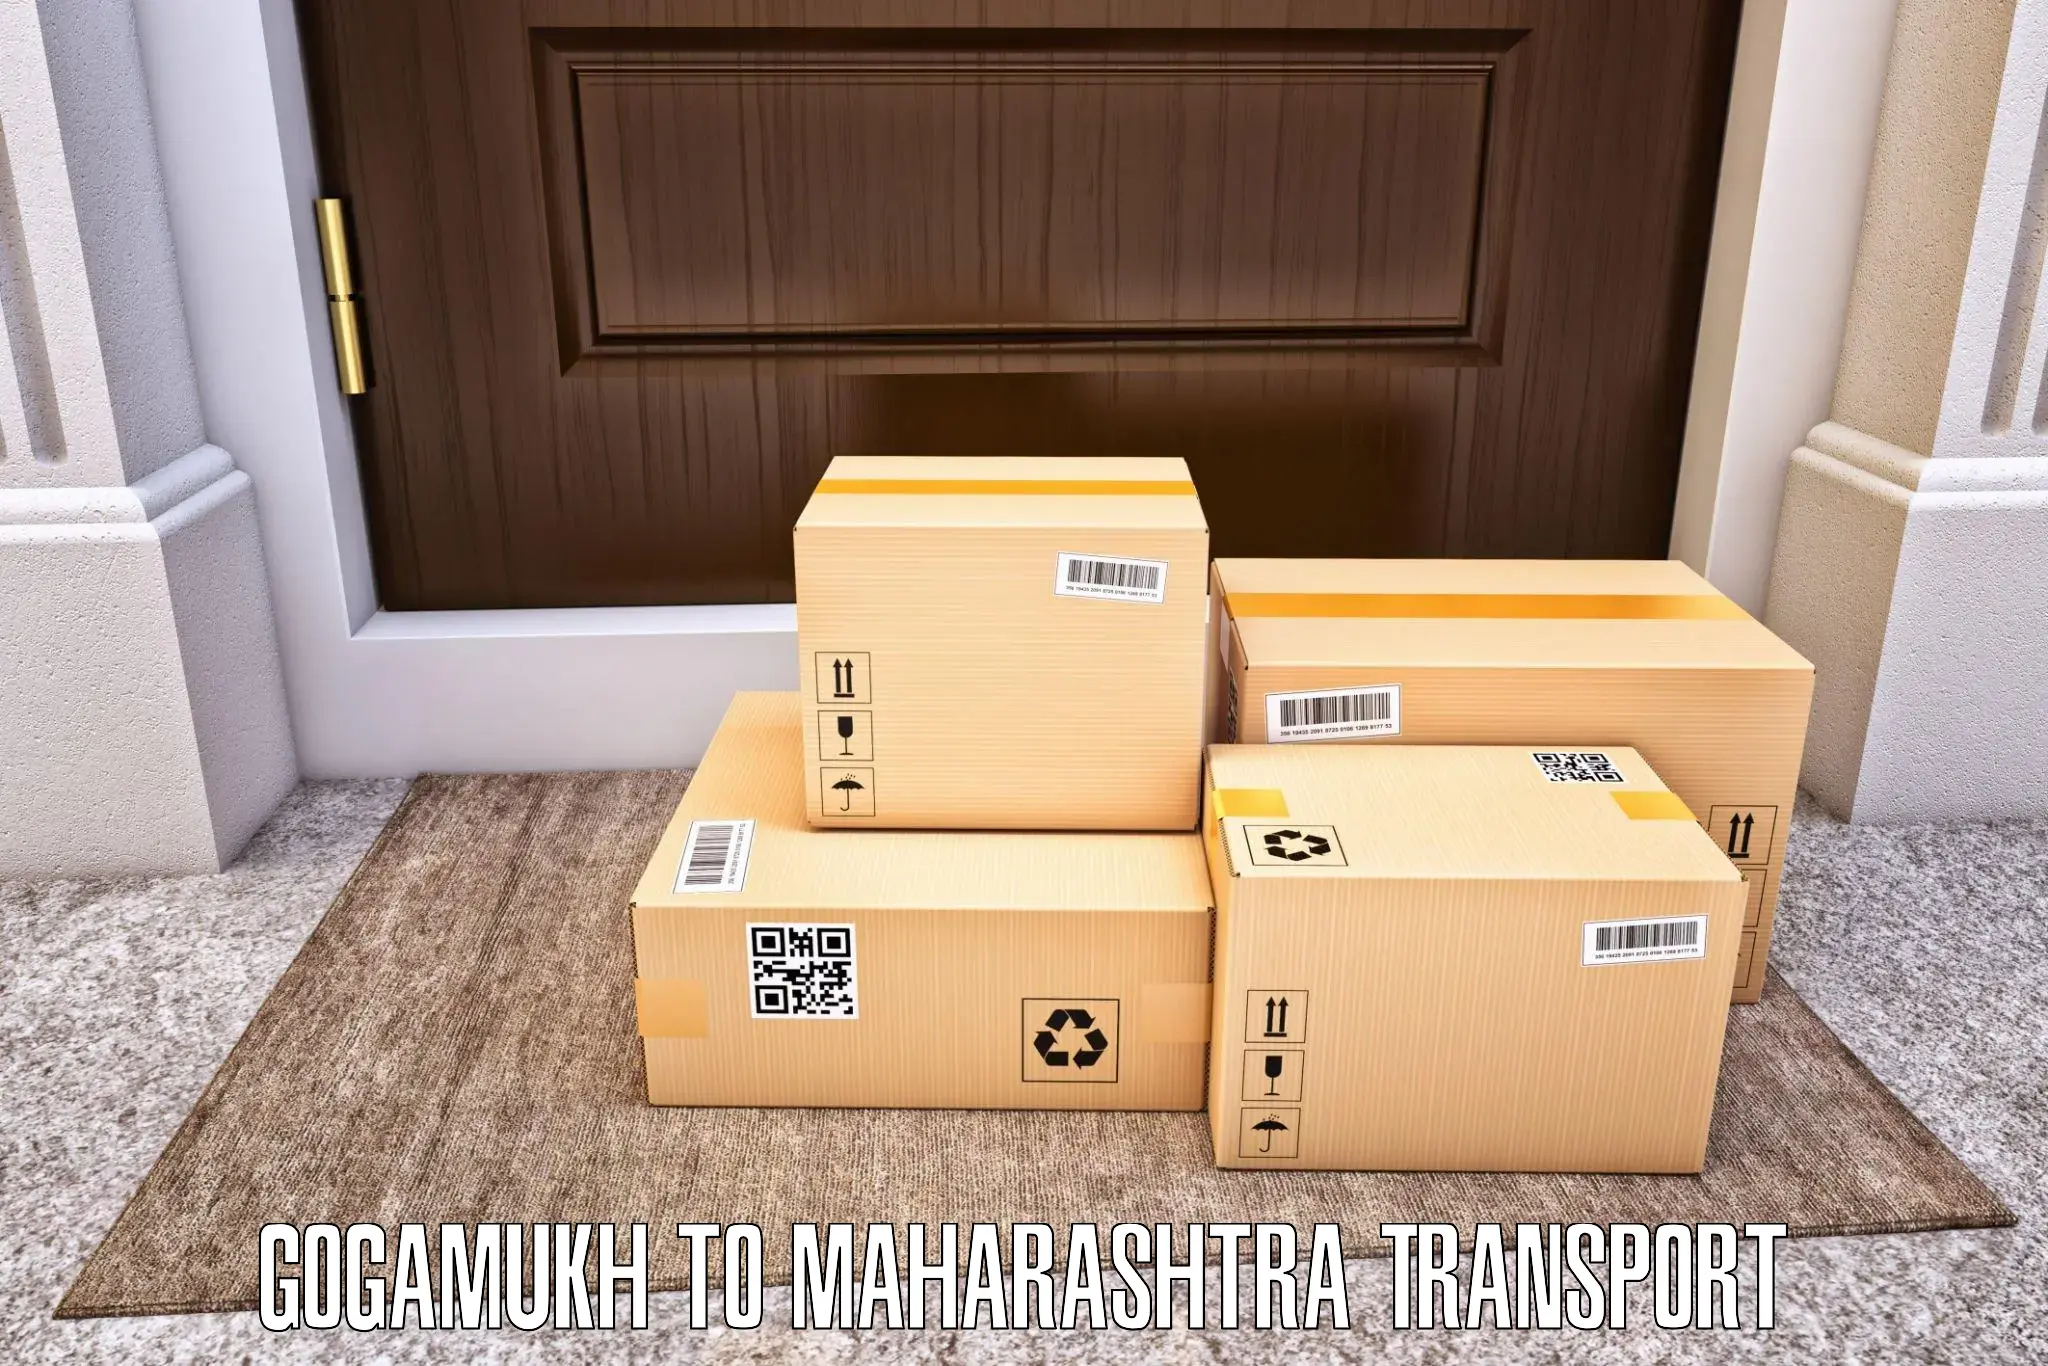 Delivery service Gogamukh to Maharashtra